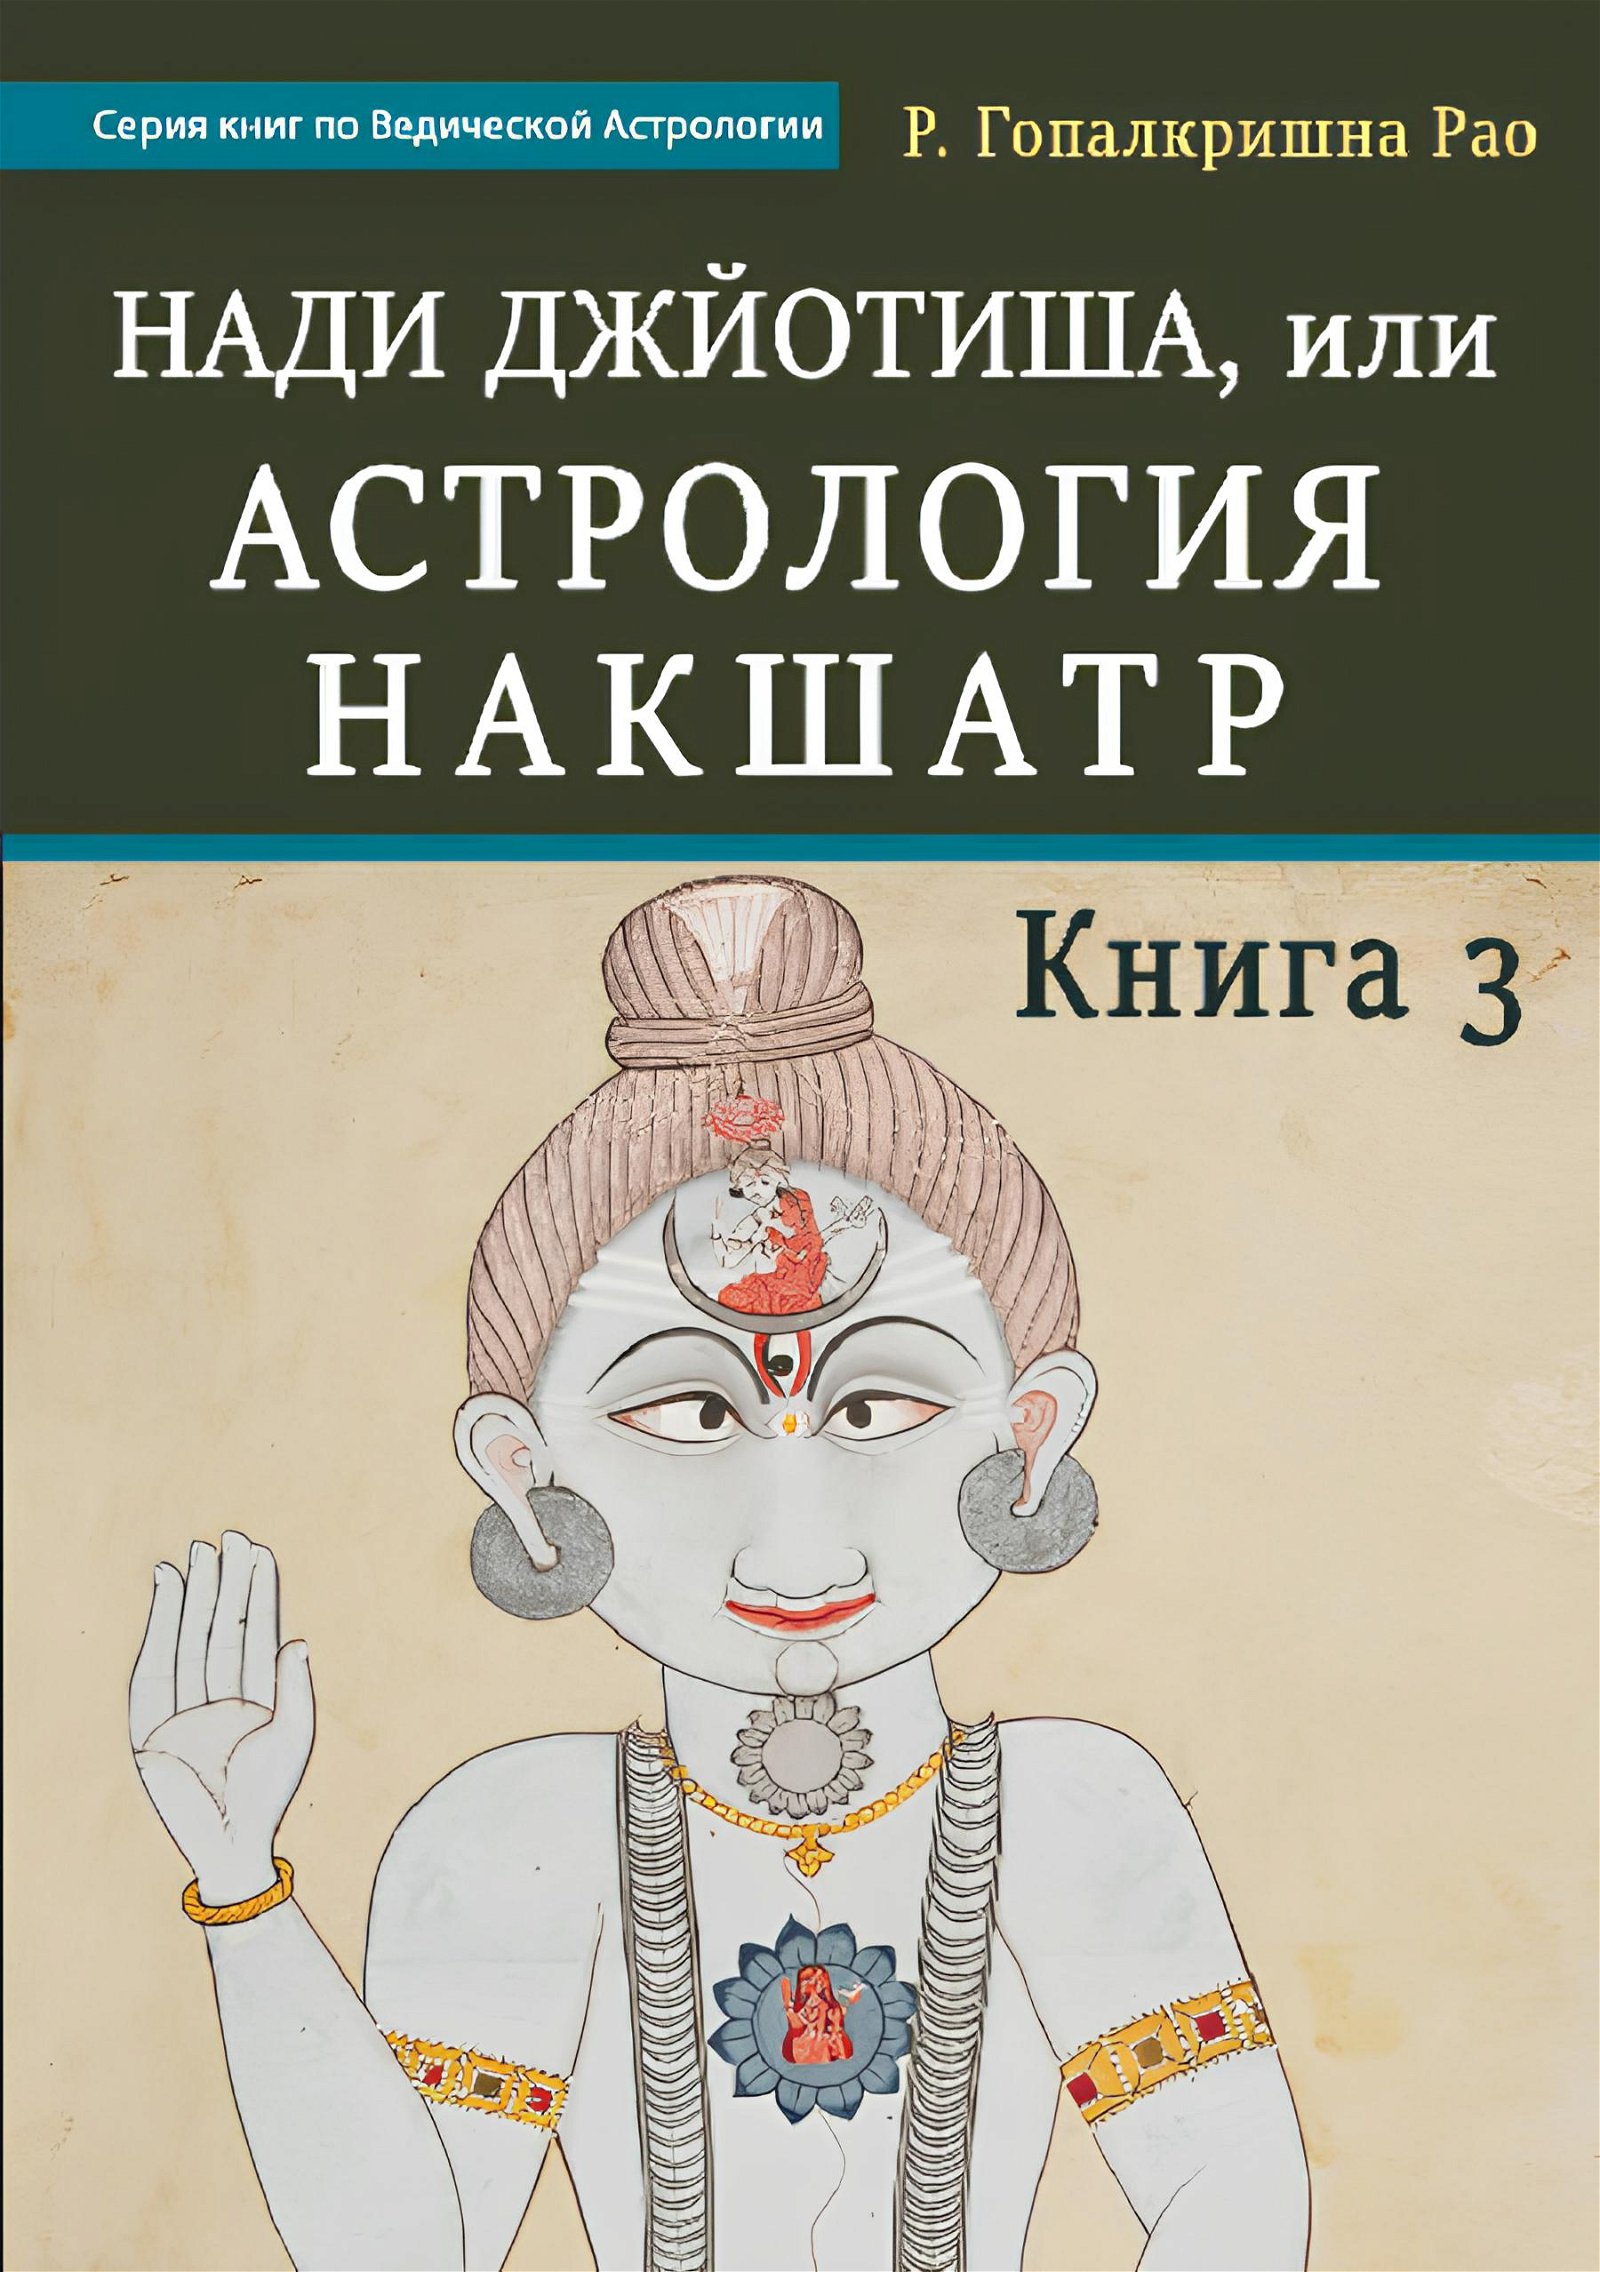 Нади Джйотиша, или Астрология Накшатр. Книга 3. 